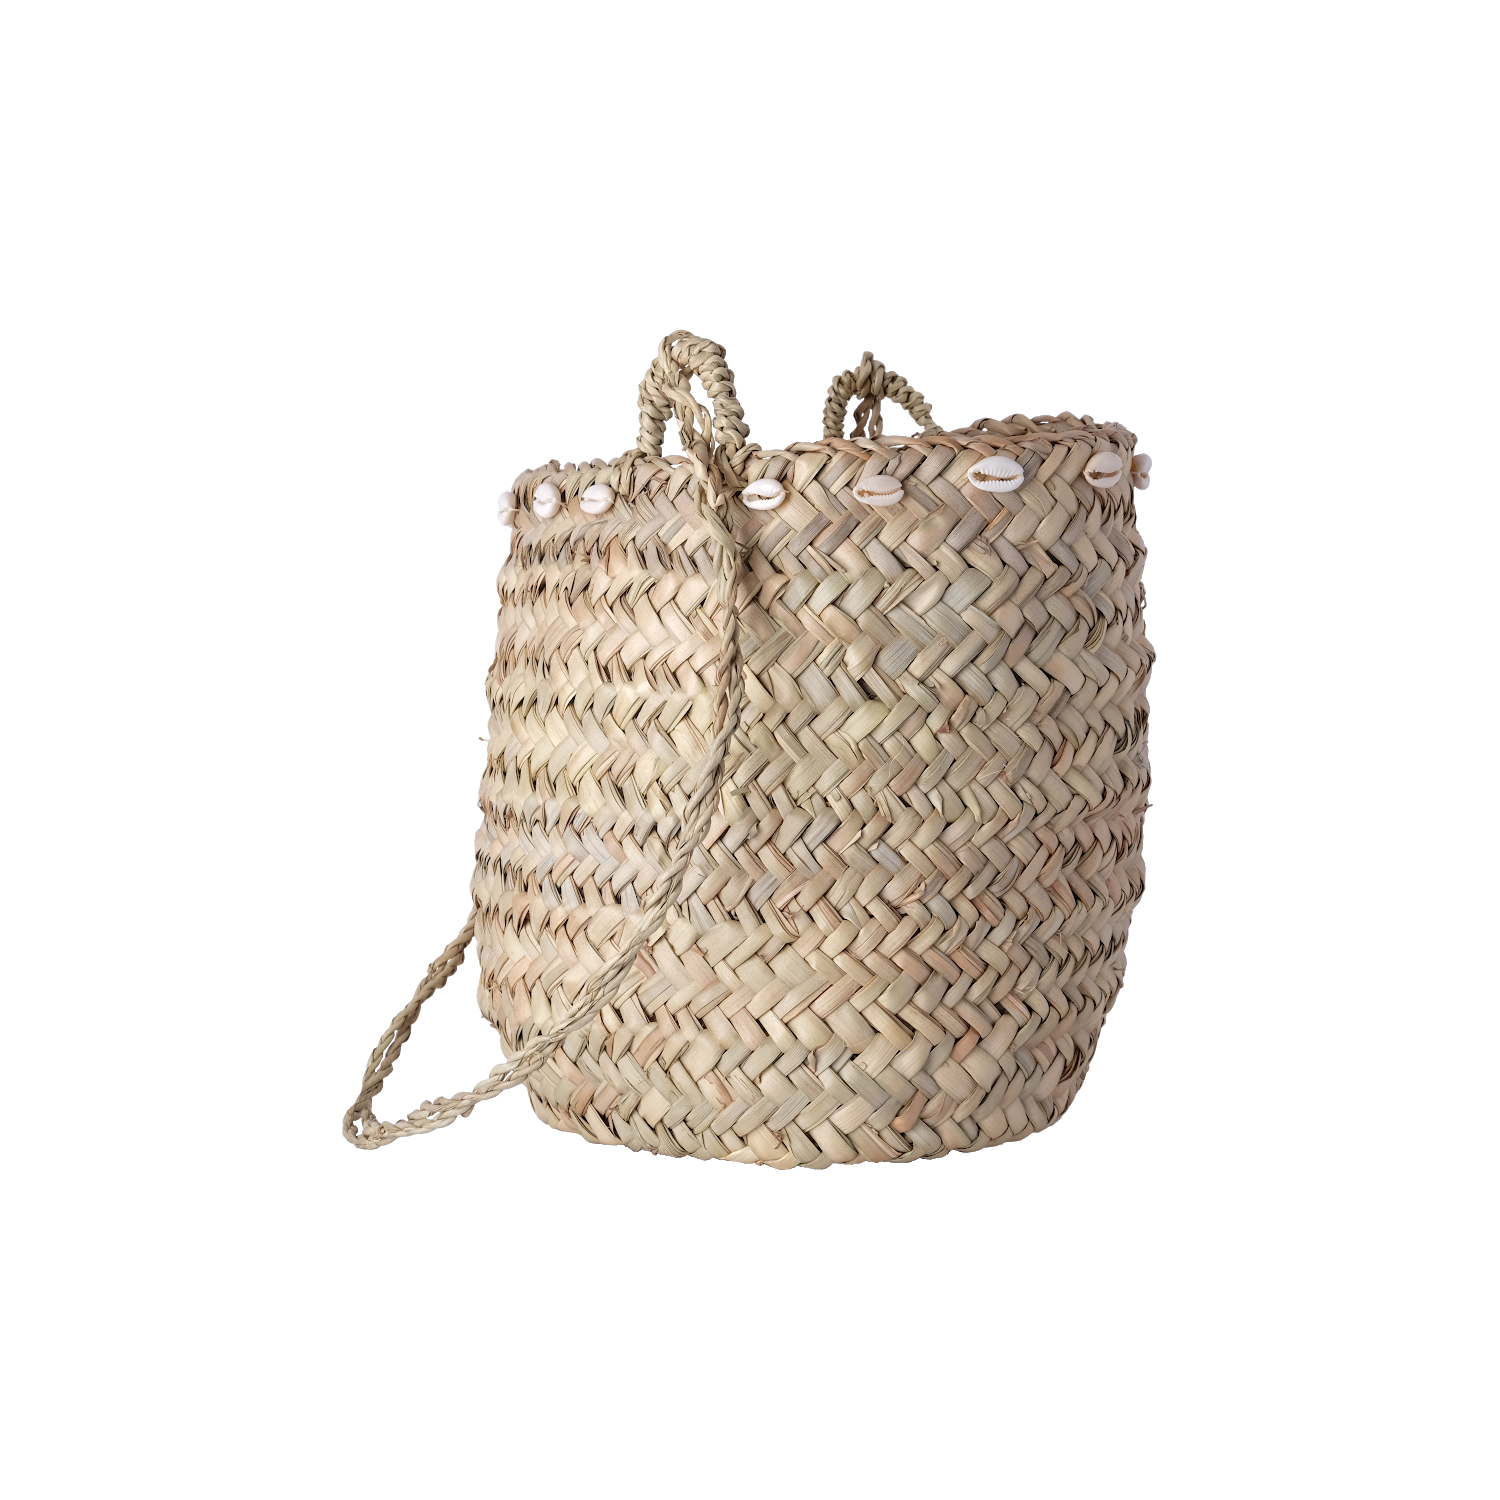 Basket Bag  Transparent Image